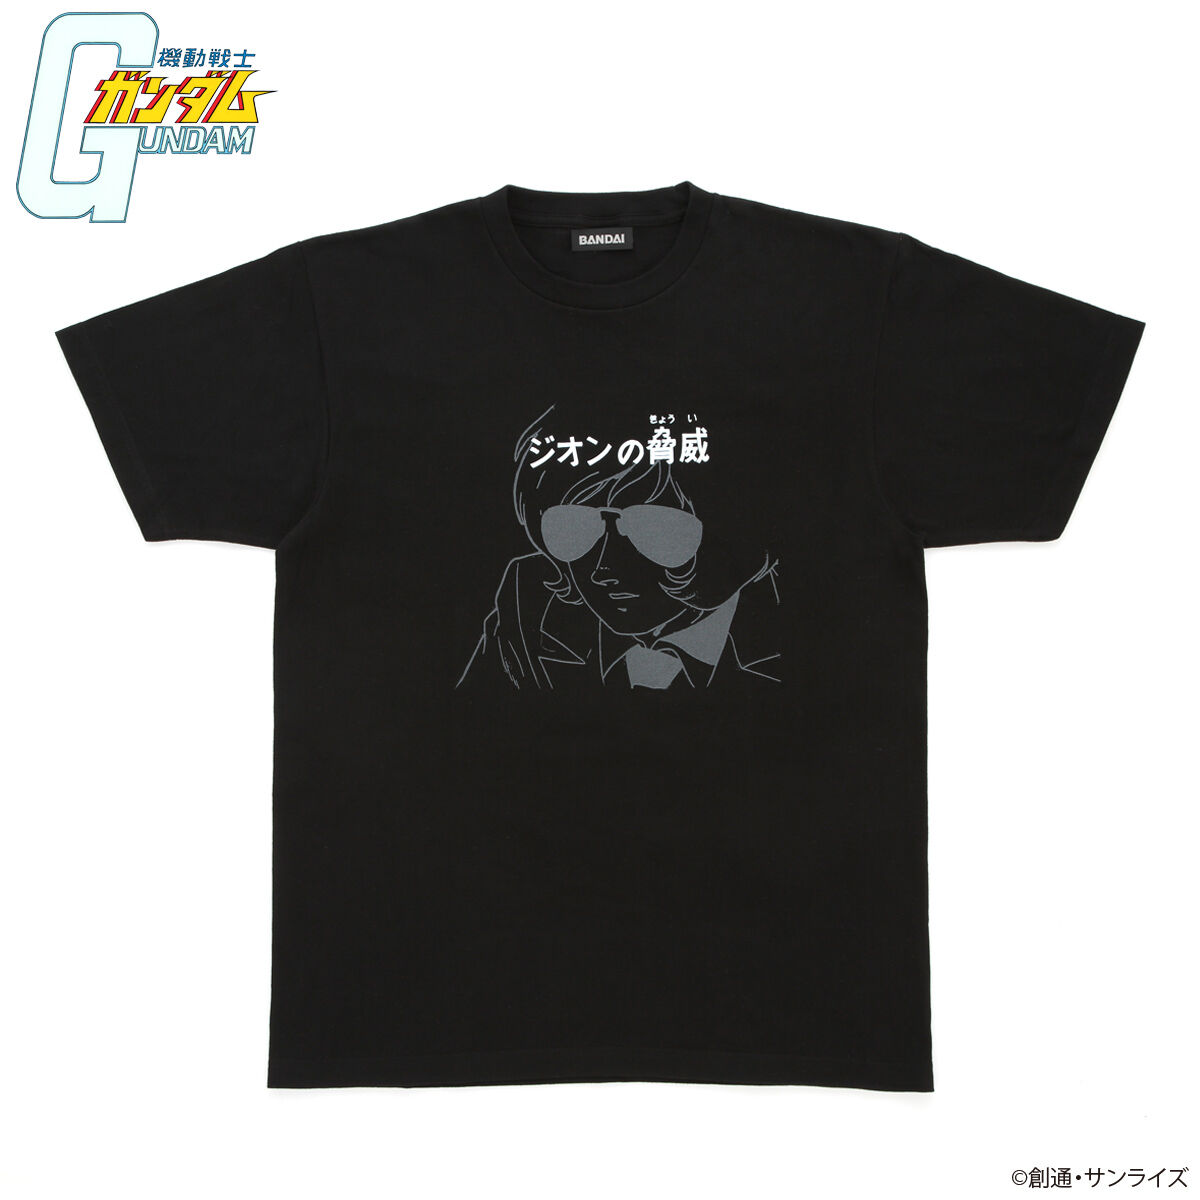 Mobile Suit Gundam Episode Title T-shirt